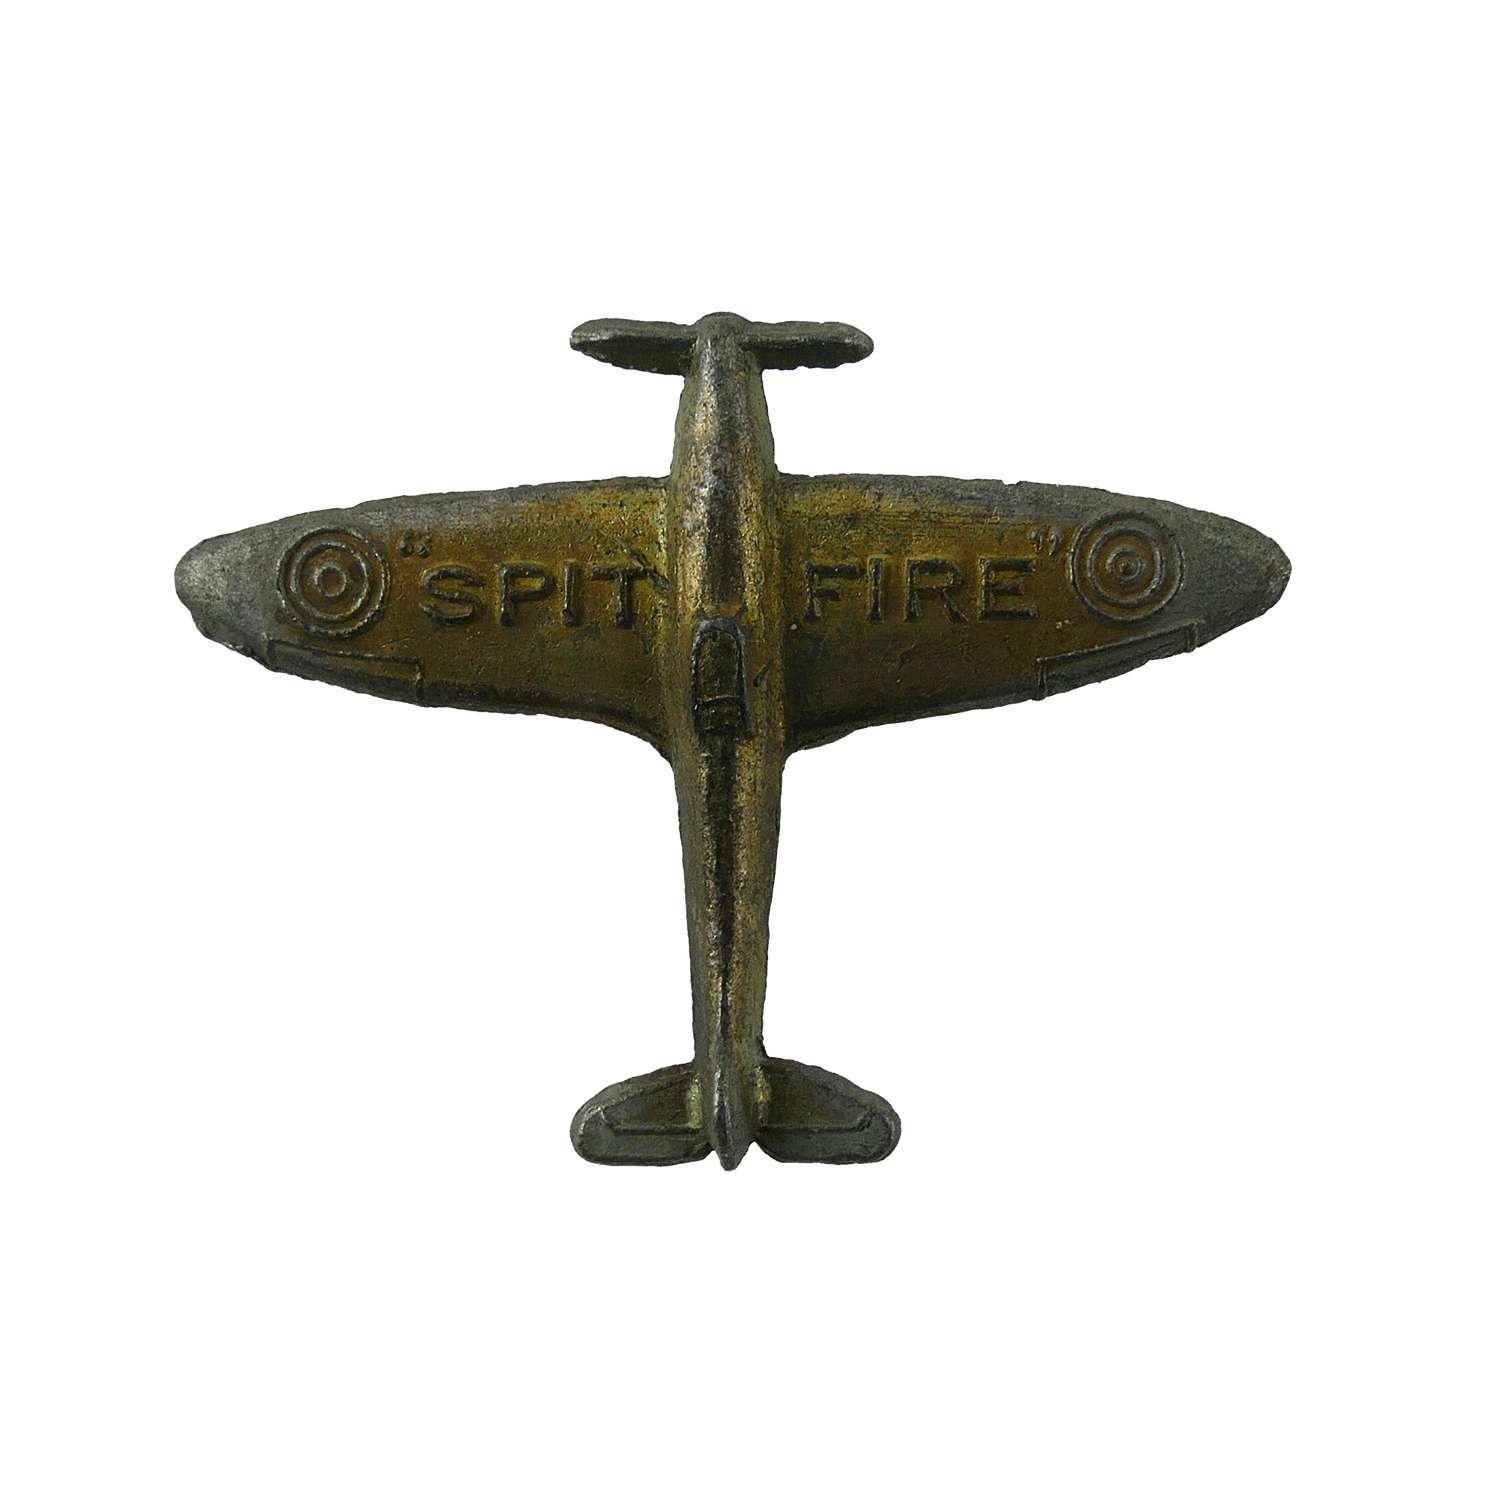 Spitfire fund badge